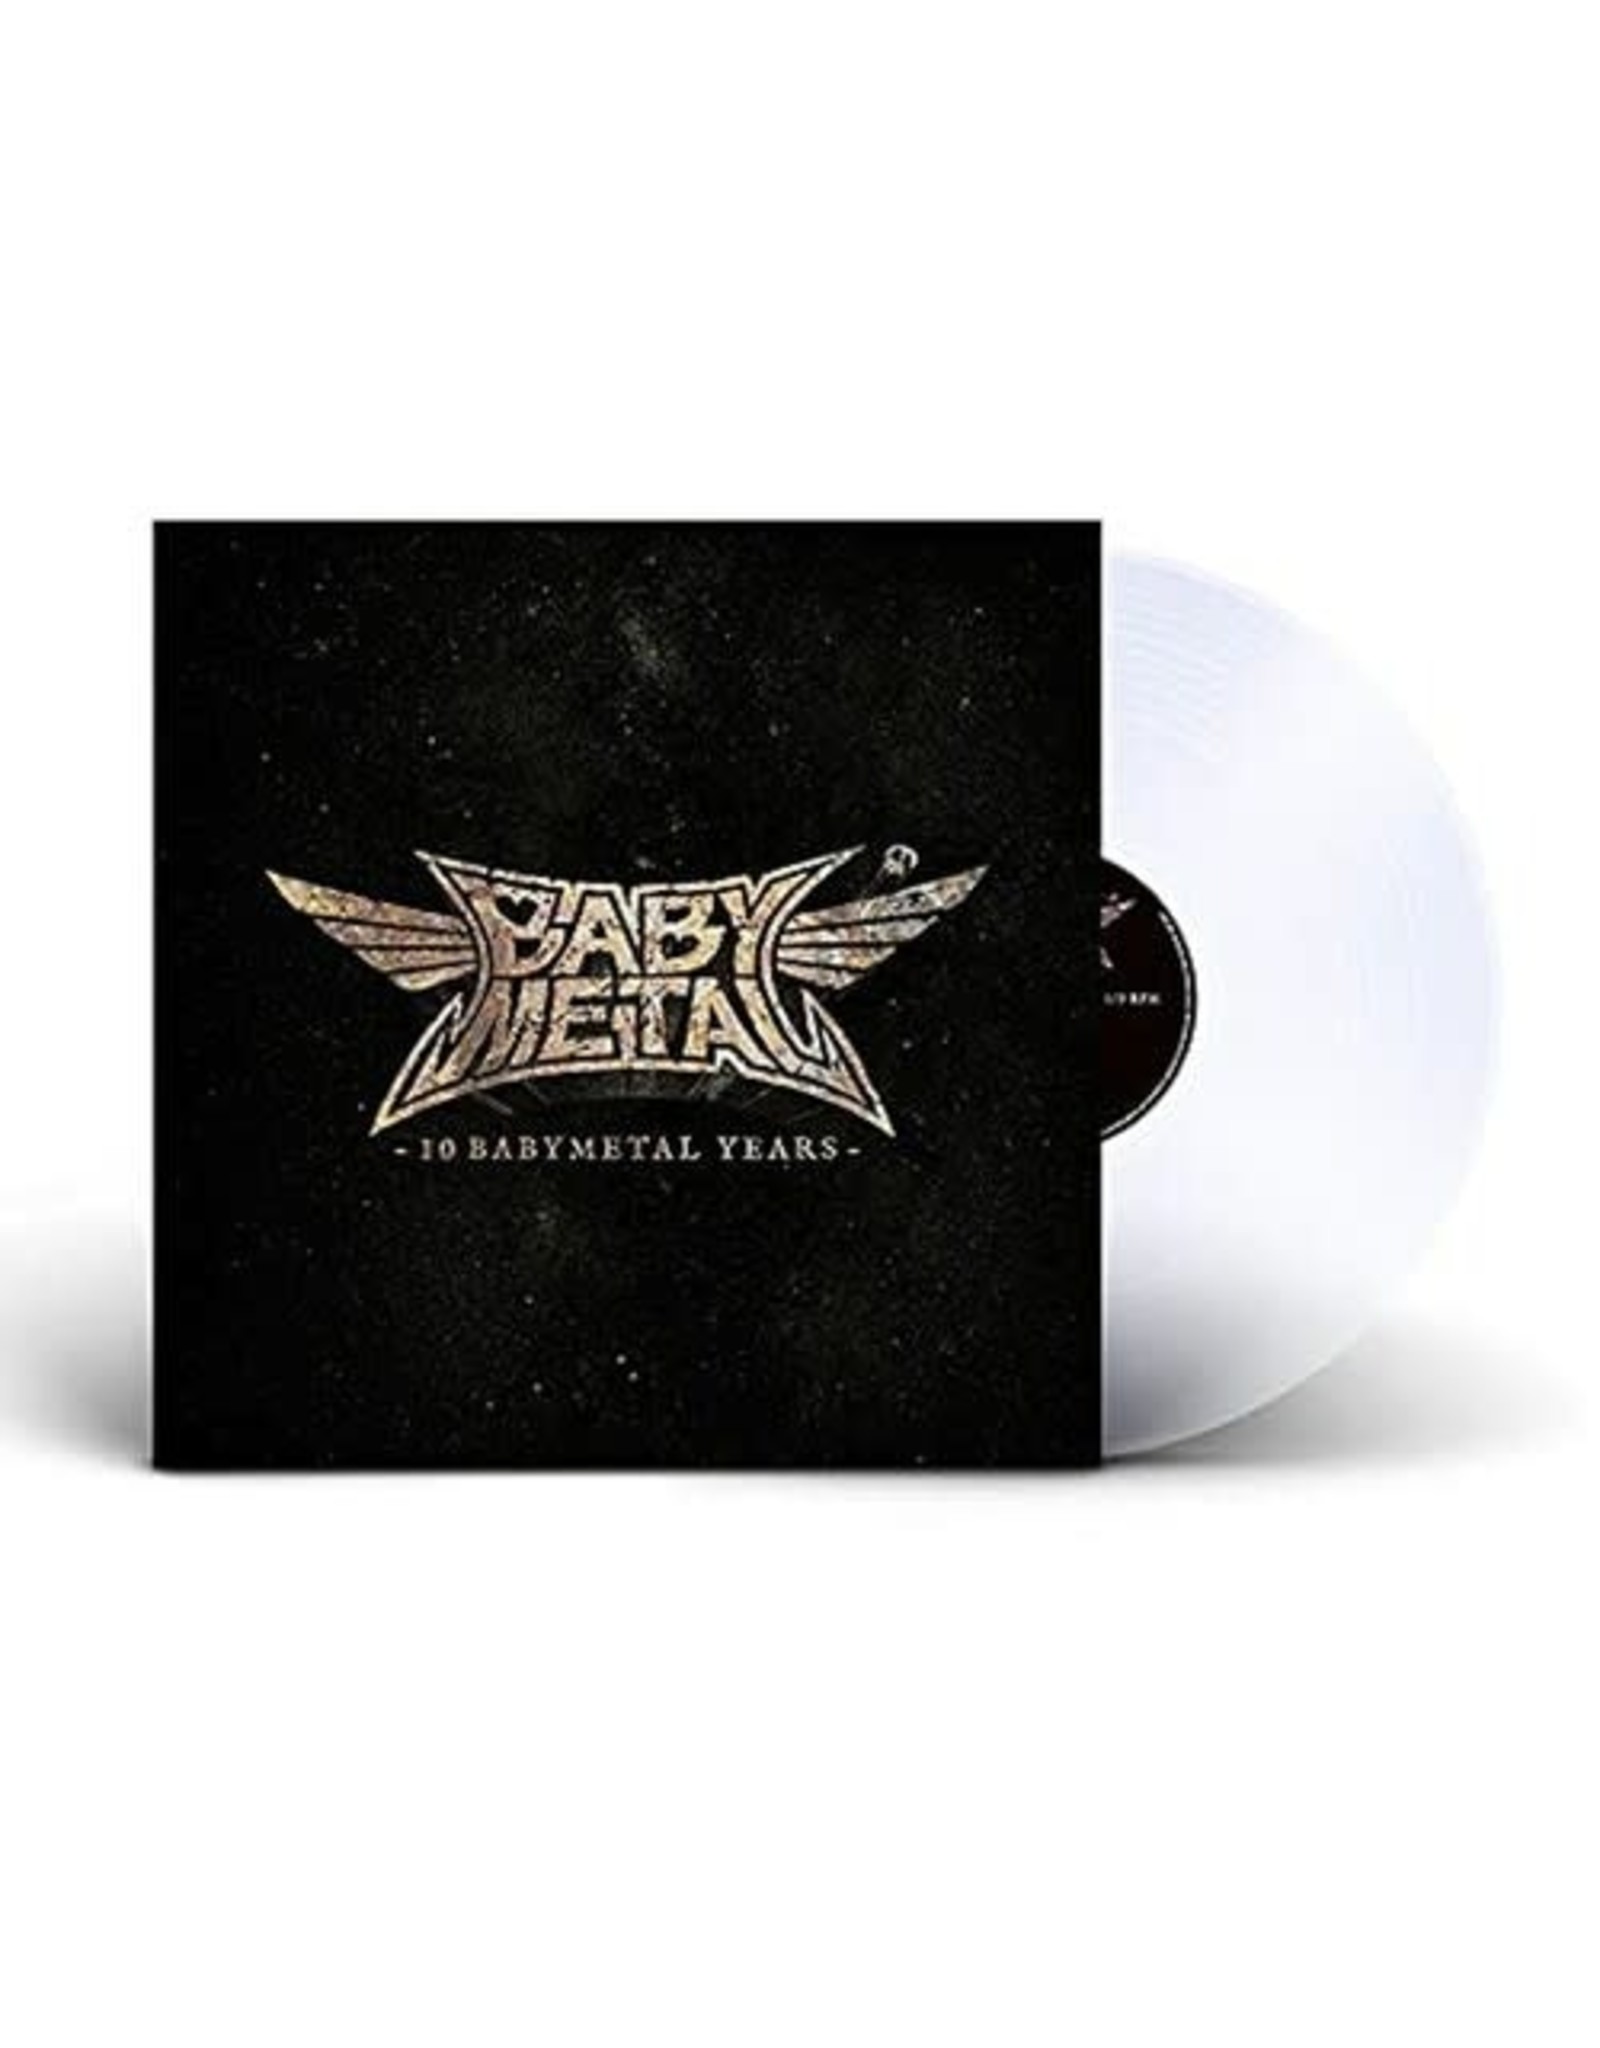 Baby Metal Babymetal - 10 Babymetal Years [Clear Vinyl]